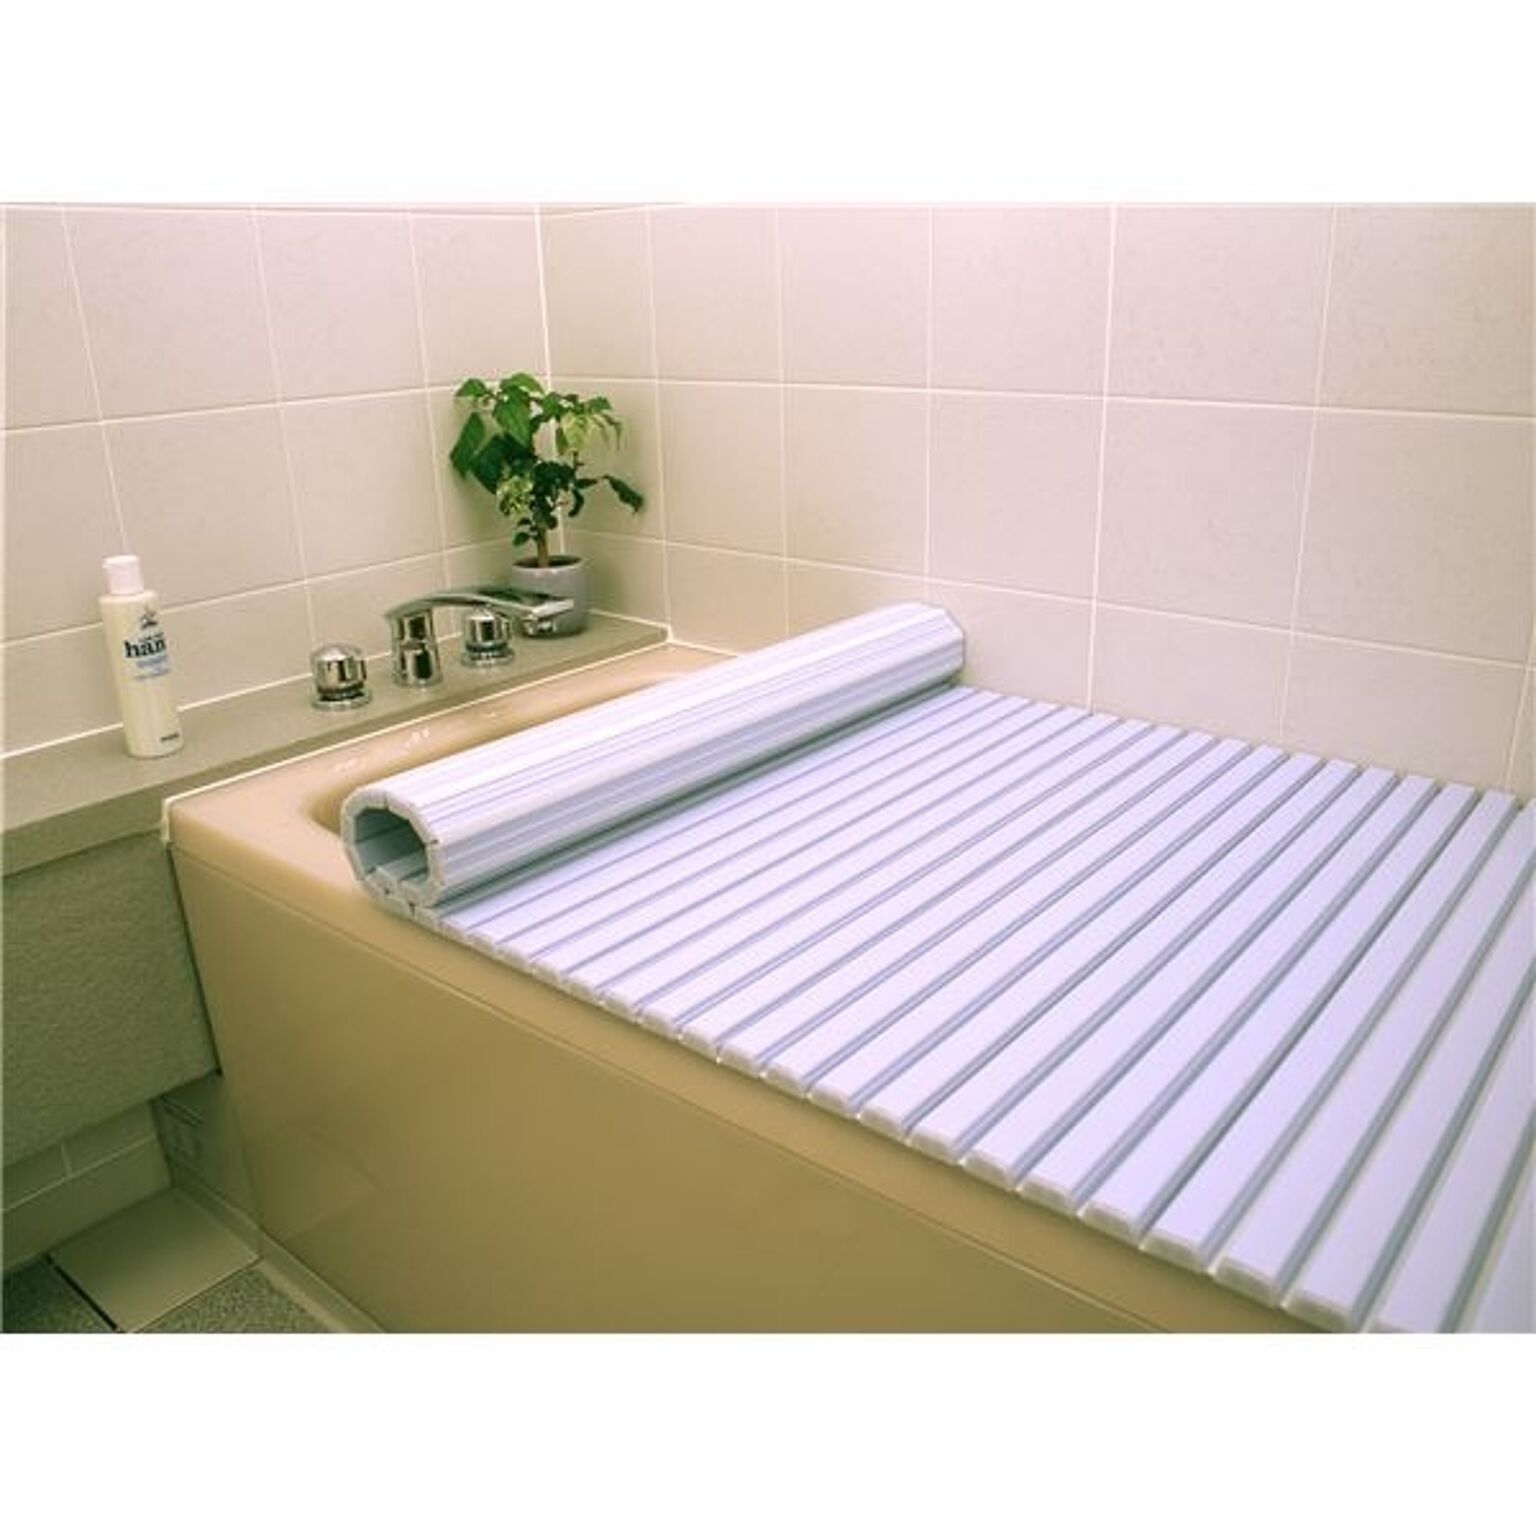 シャッター式風呂ふた/巻きフタ 75cm×140cm用 ブルー SGマーク認定 日本製